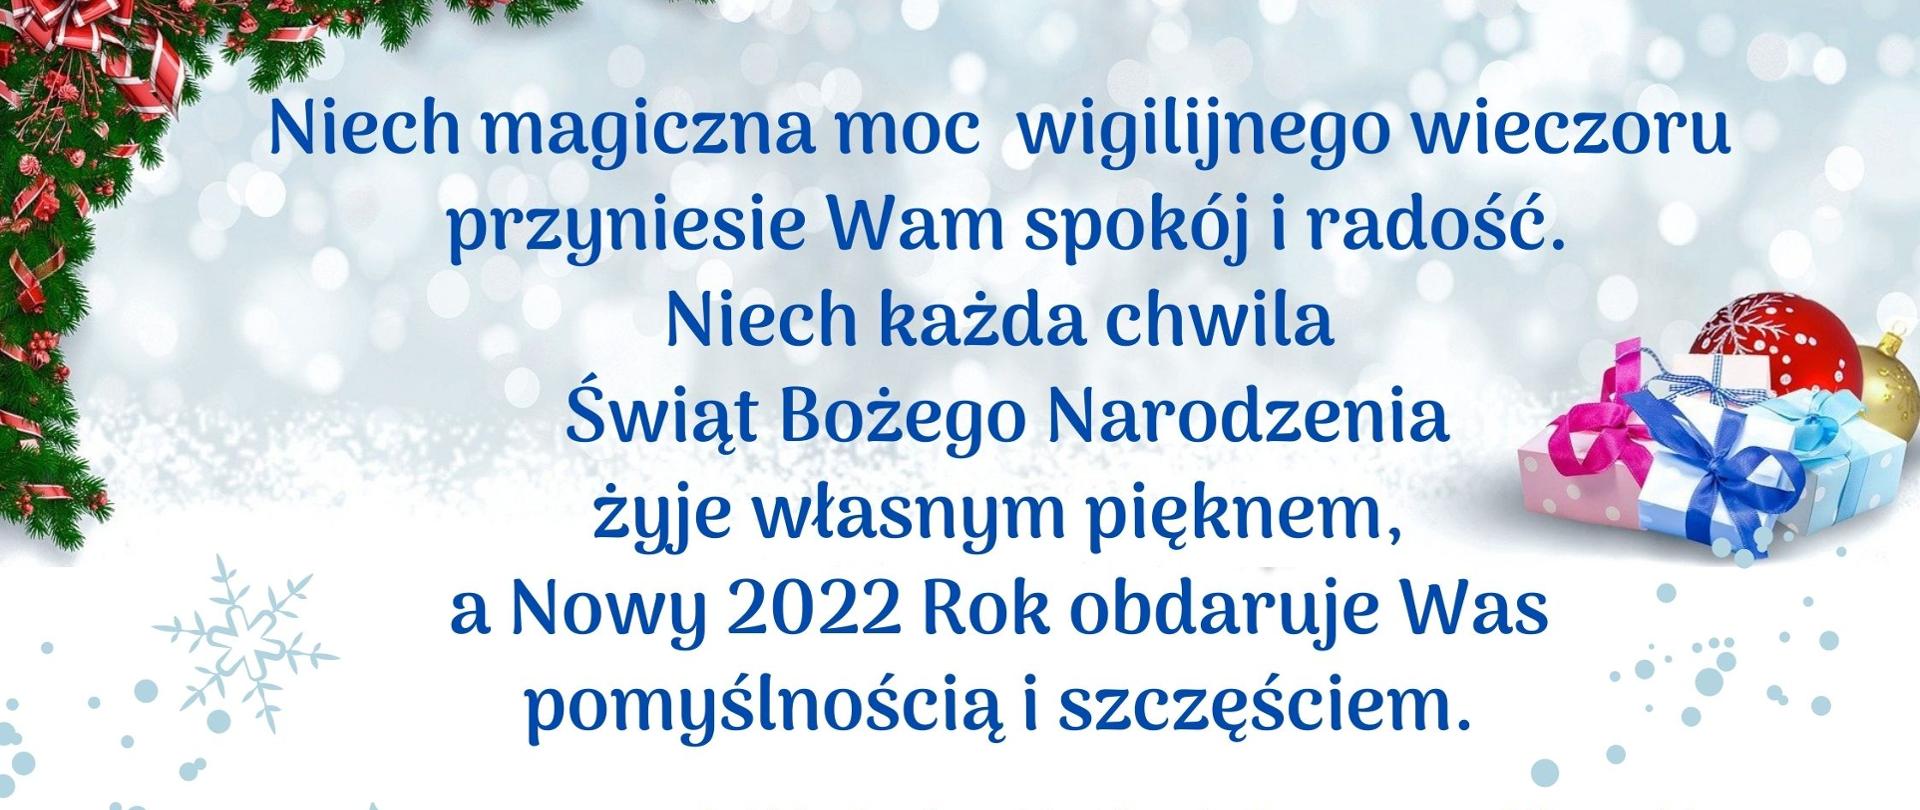 Treść: Niech magiczna moc wigilijnego wieczoru przyniesie Wam spokój i radość, niech każda chwila świąt Bożego Narodzenia żyje własnym pięknem, a Nowy Rok obdaruje Was pomyślnością i szczęściem życzą Wójt Gminy Hażlach Grzegorz Sikorski, Przewodniczący Rady Gminy Sławomir Kolondra wraz z Radnymi, Sołtysami i Radami Sołeckimi.